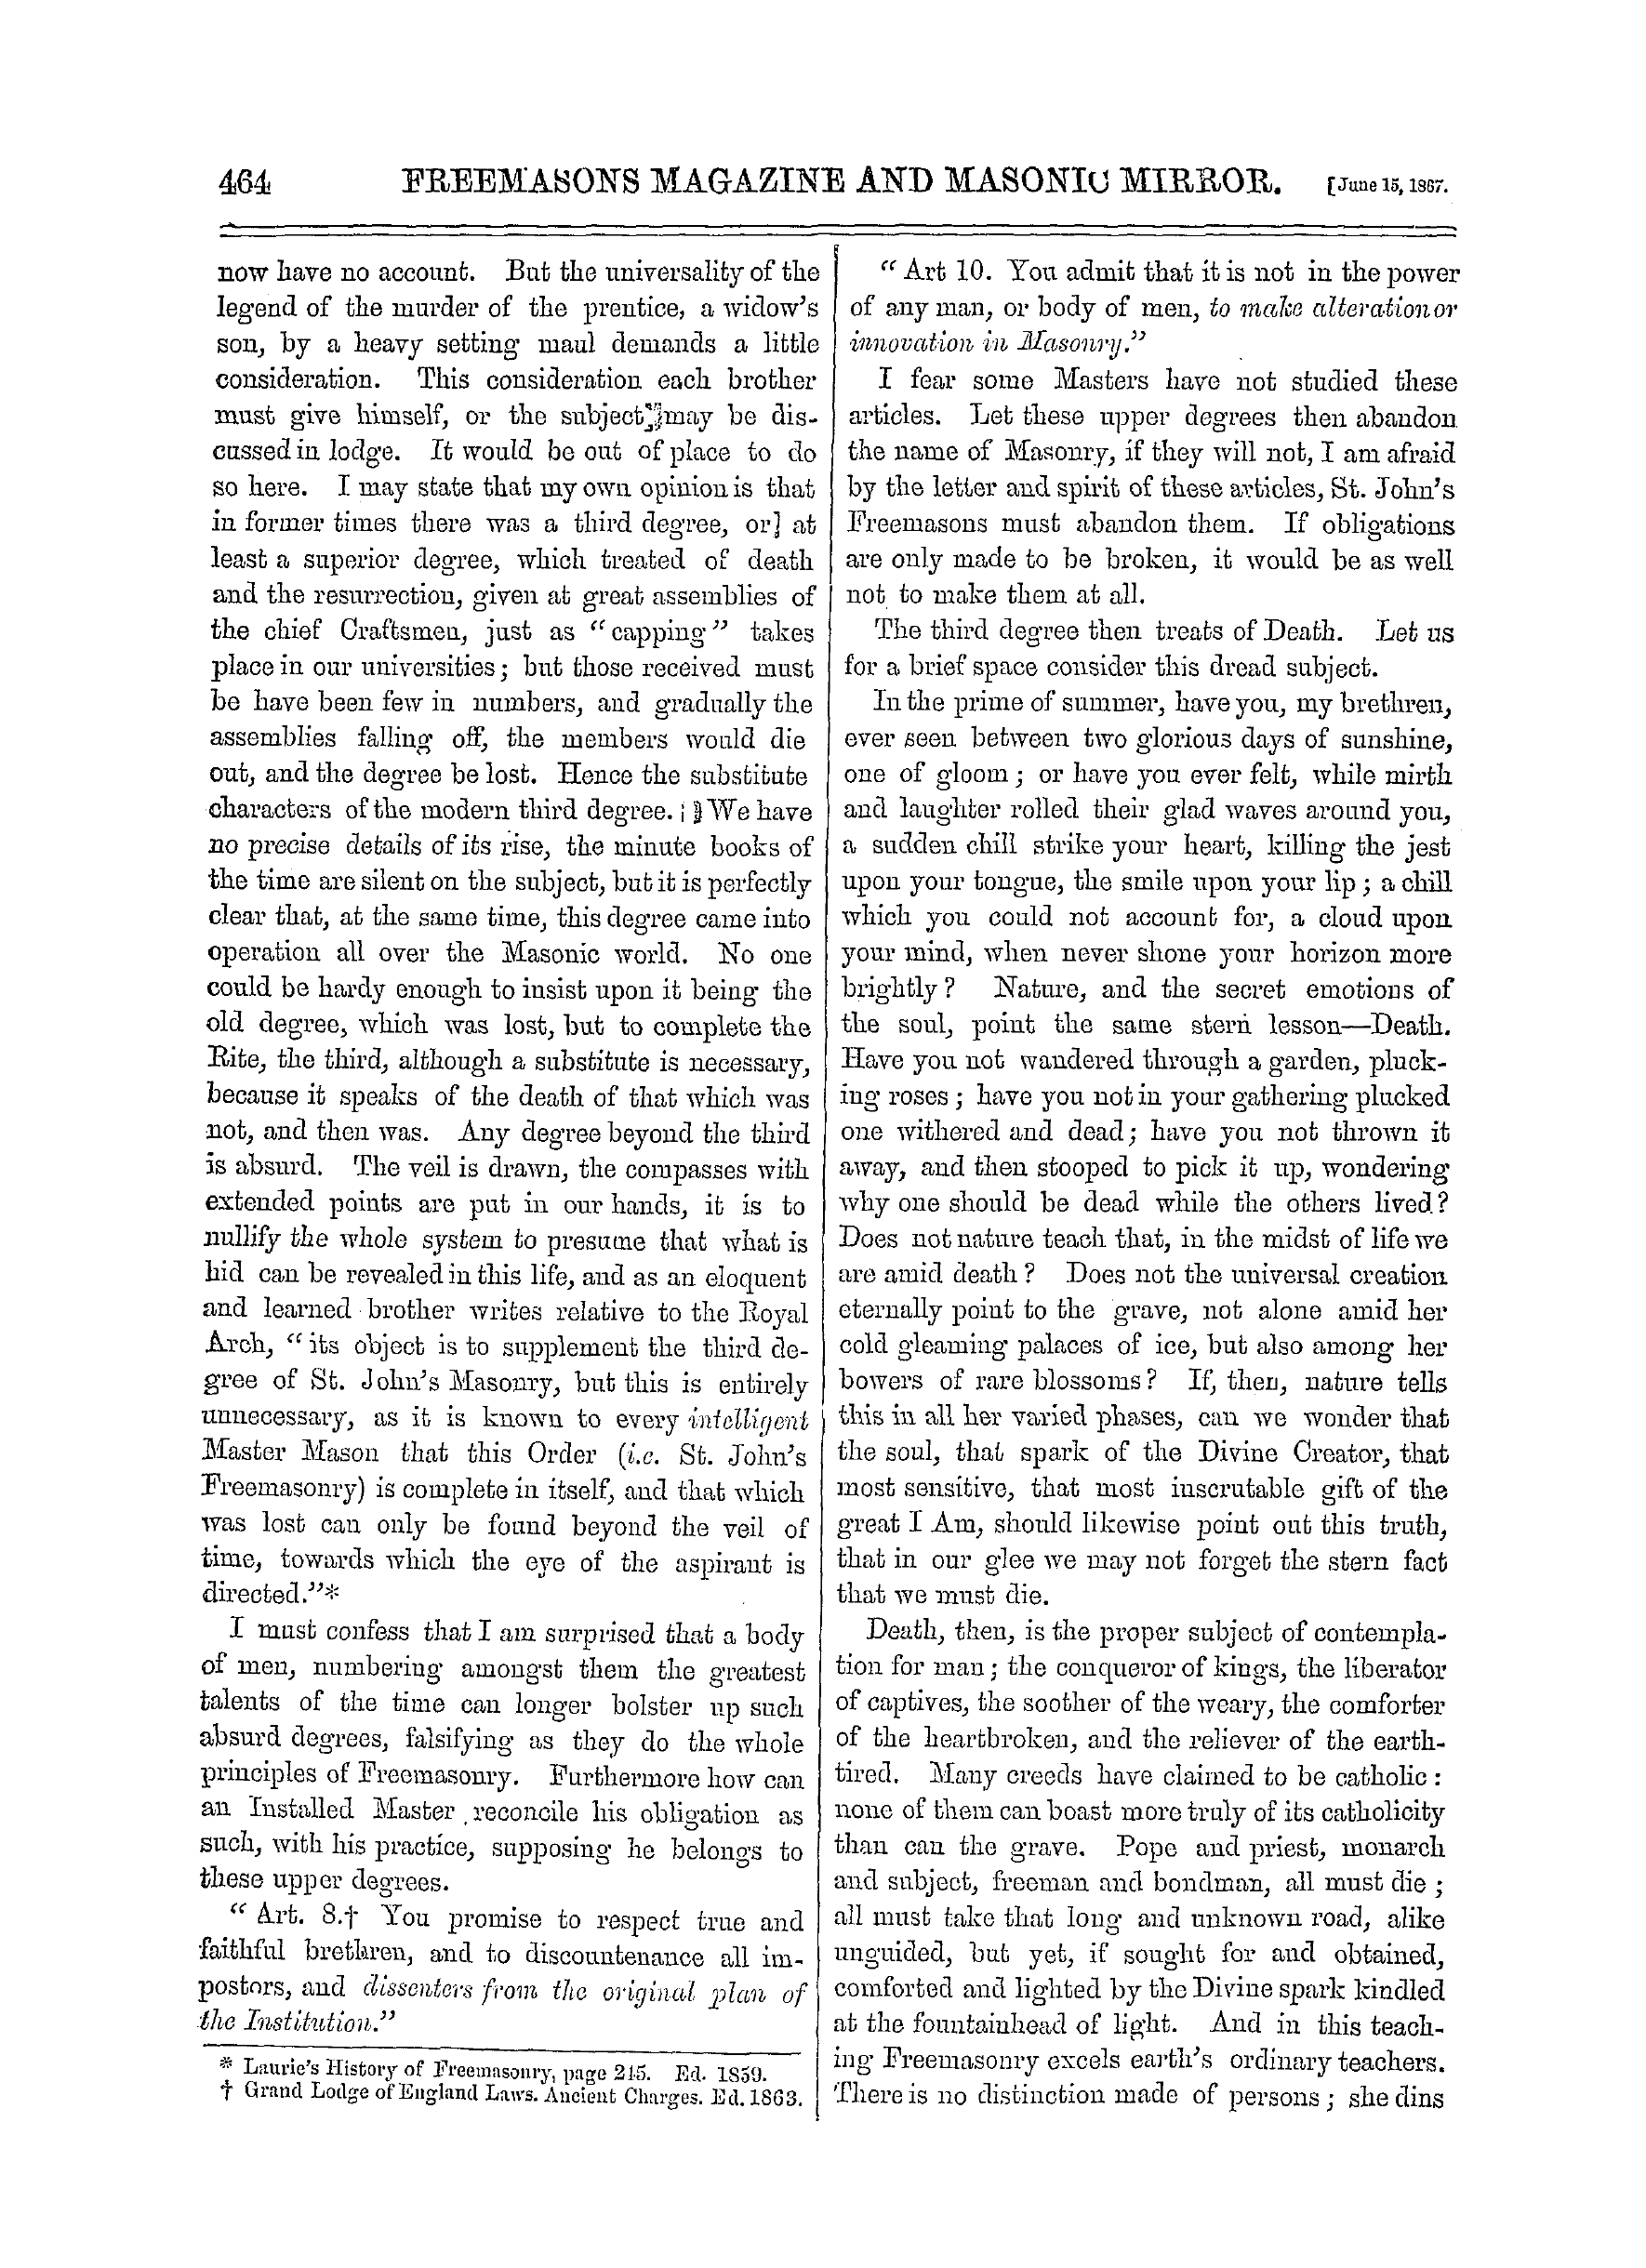 The Freemasons' Monthly Magazine: 1867-06-15: 4